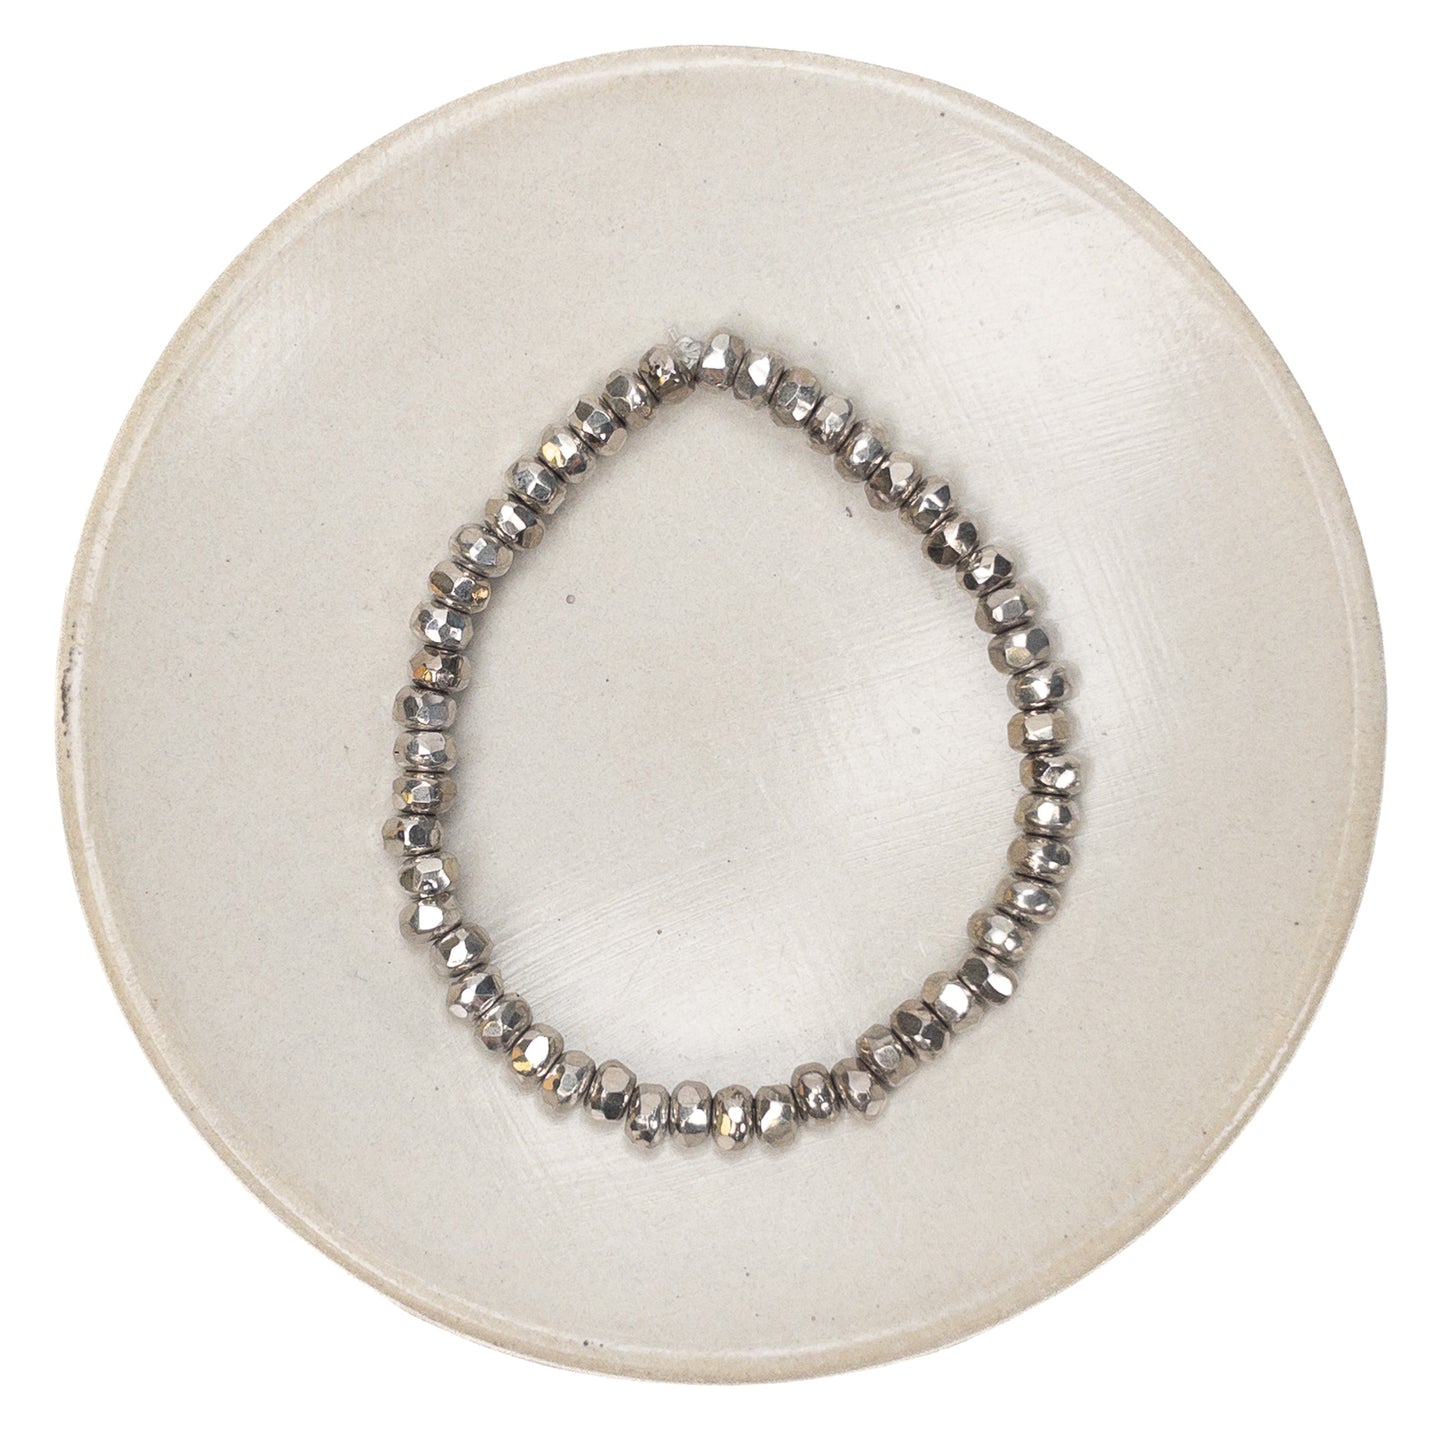 Metallic Pyrite 2x3mm Faceted Gem Cut Glass Bead - 50 pcs.